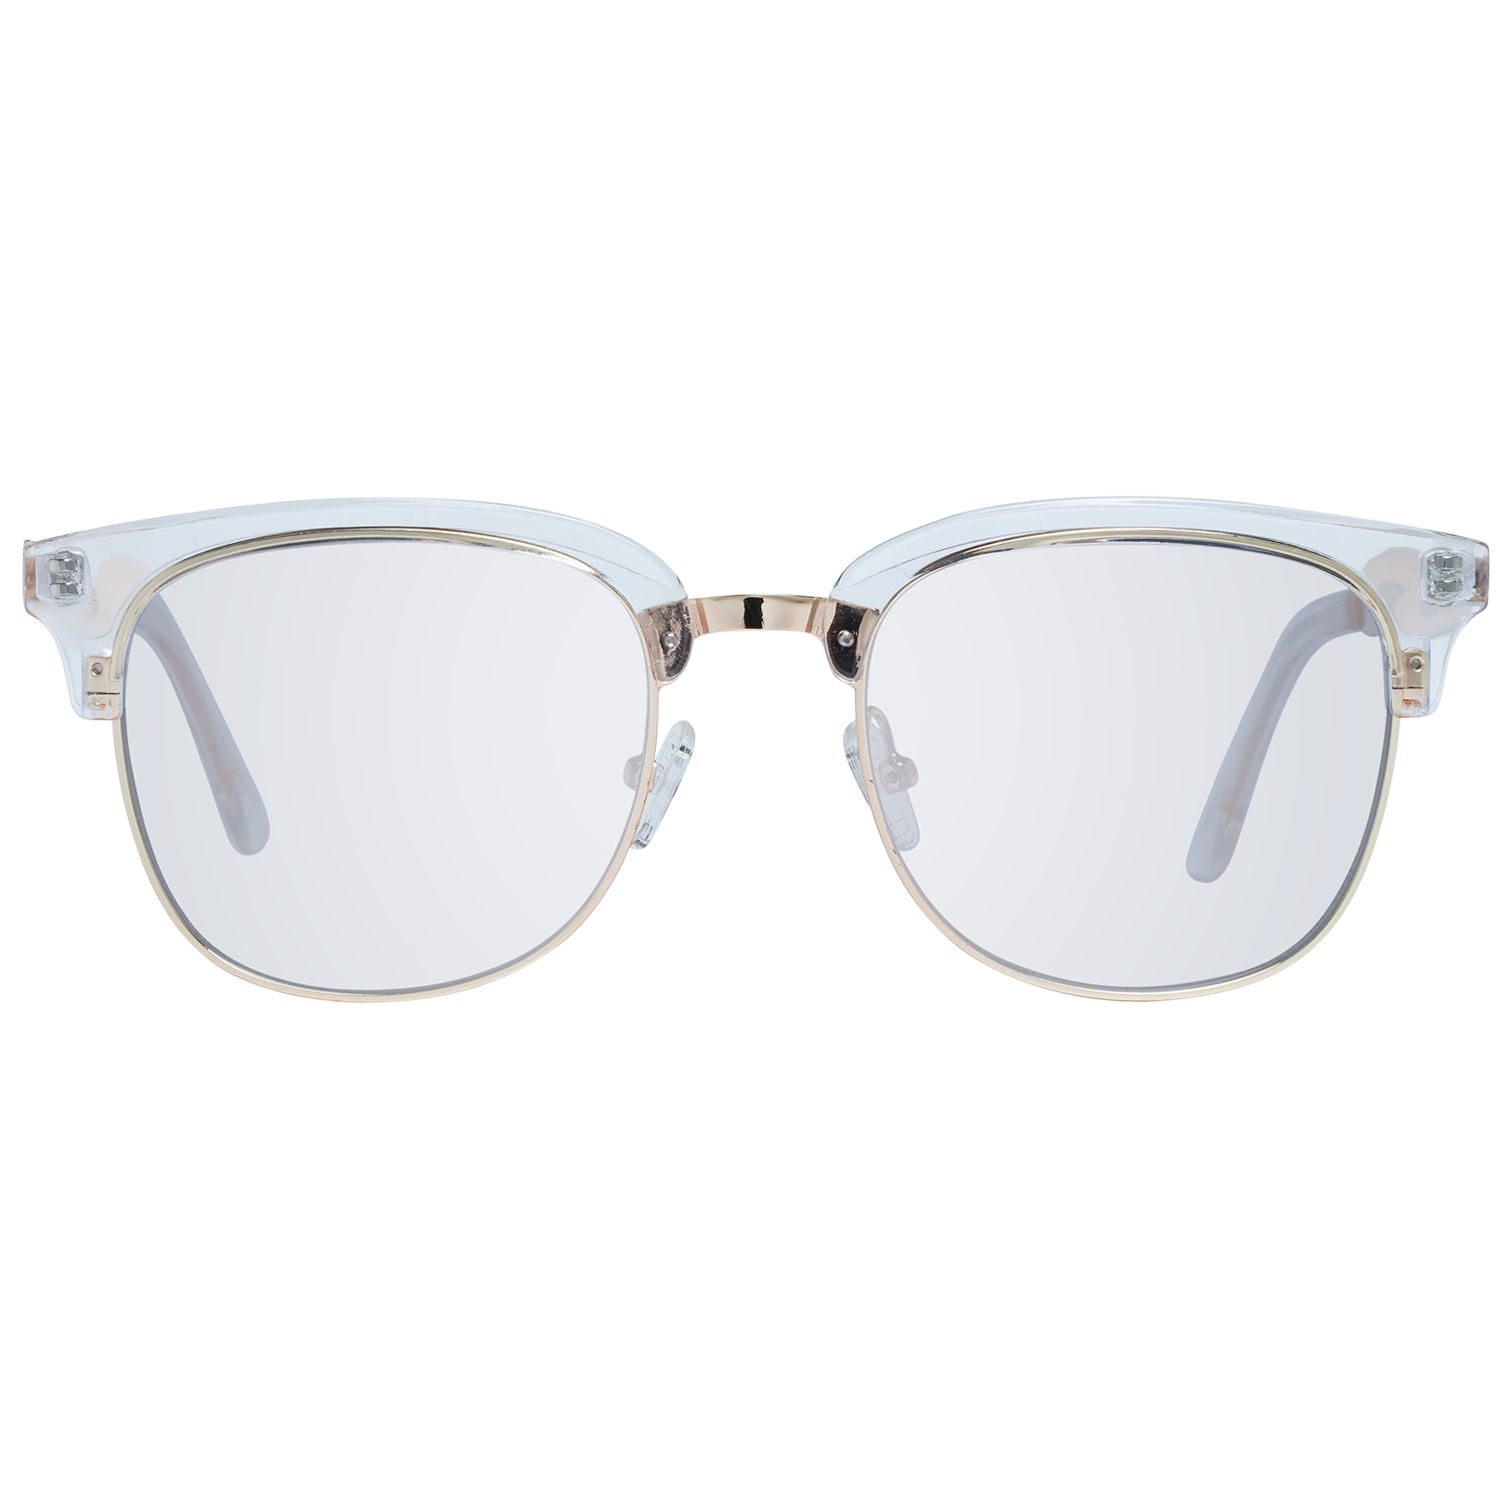 Spy Sunglasses Spy Sunglasses 6700000000054 Stout 51 Eyeglasses Eyewear UK USA Australia 